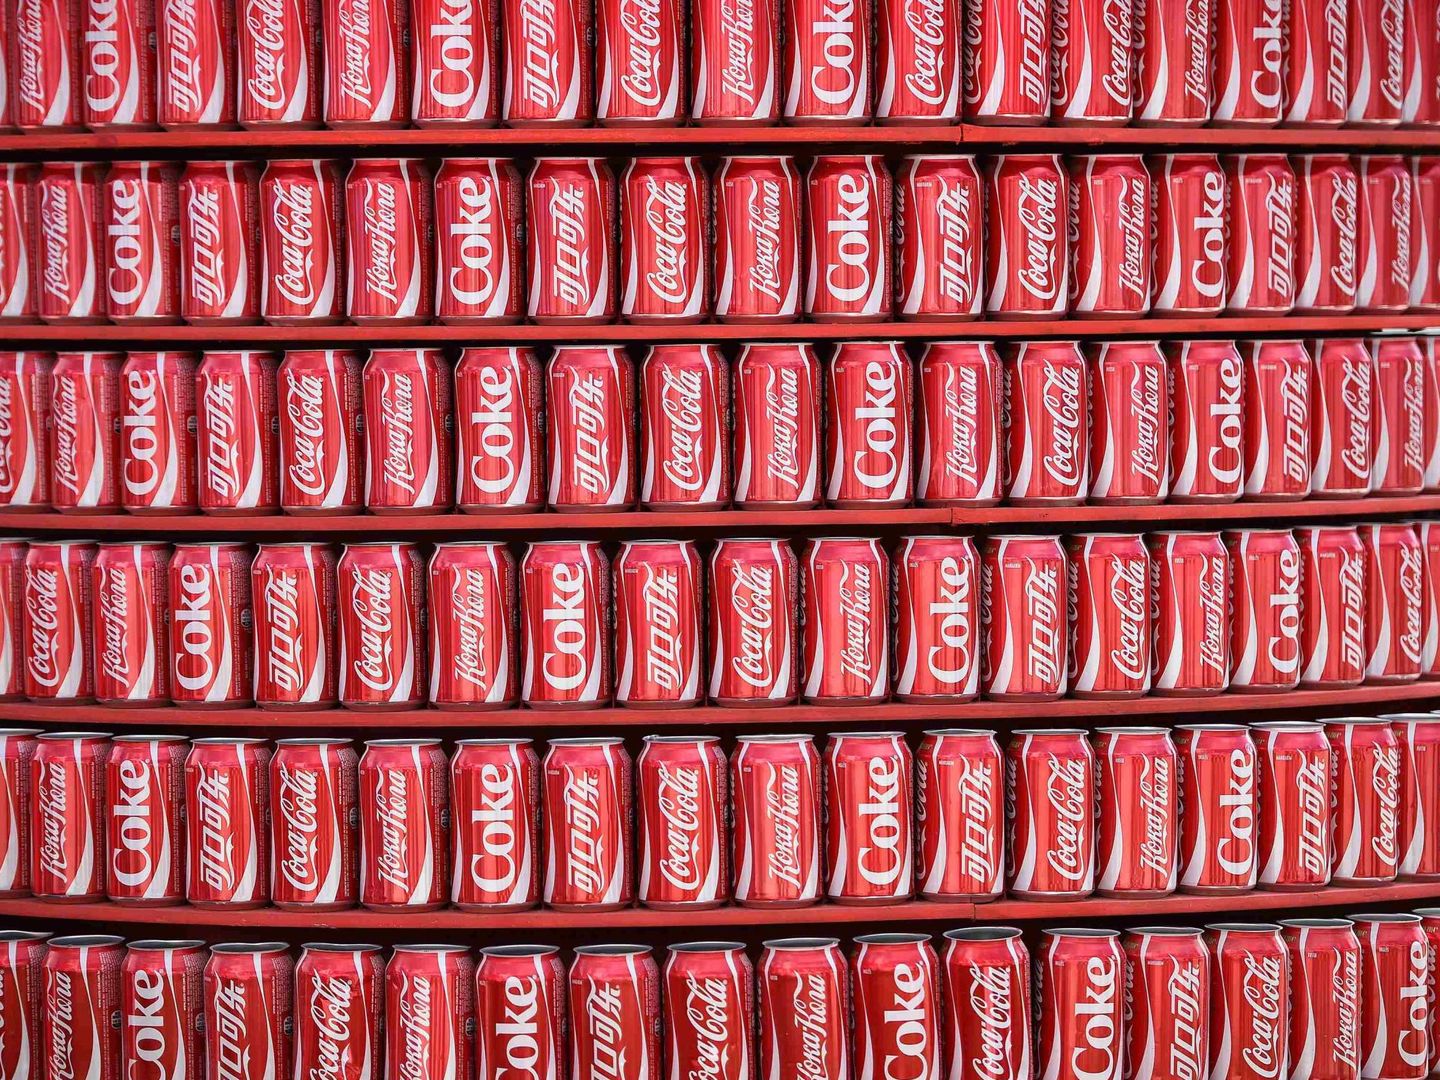 Coca-Cola opera en 207 países y cuenta con 700.000 empleados en todo el mundo. (Reuters)